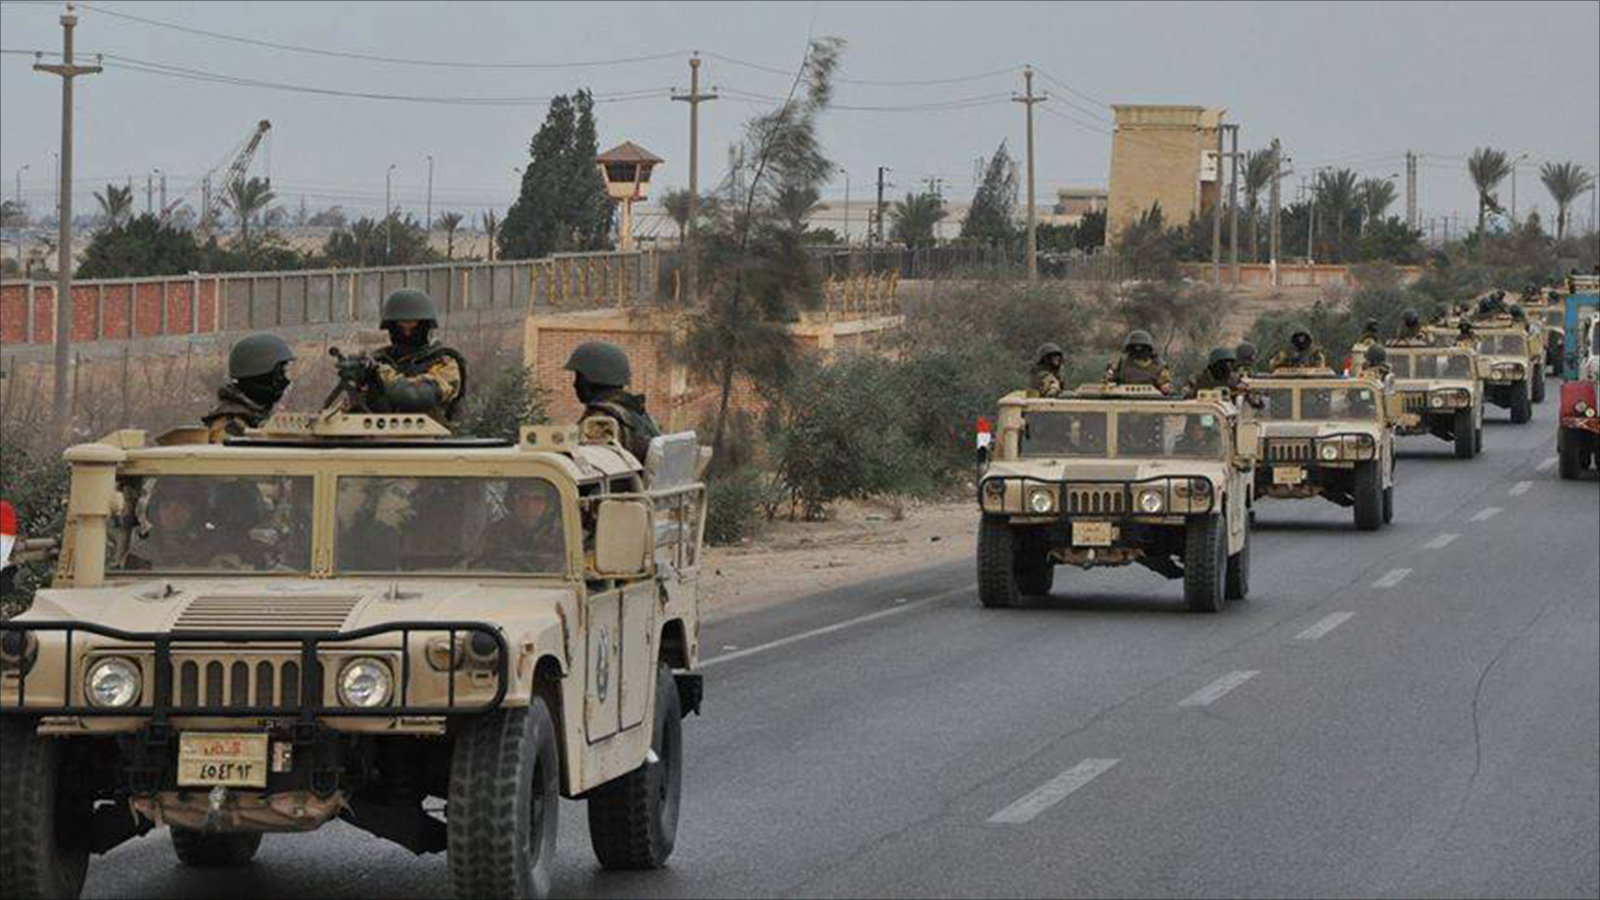 الجيش المصري شن حملات ضد المسلحين في سيناء وتعرضت وحداته هناك لهجمات (الجزيرة-أرشيف)